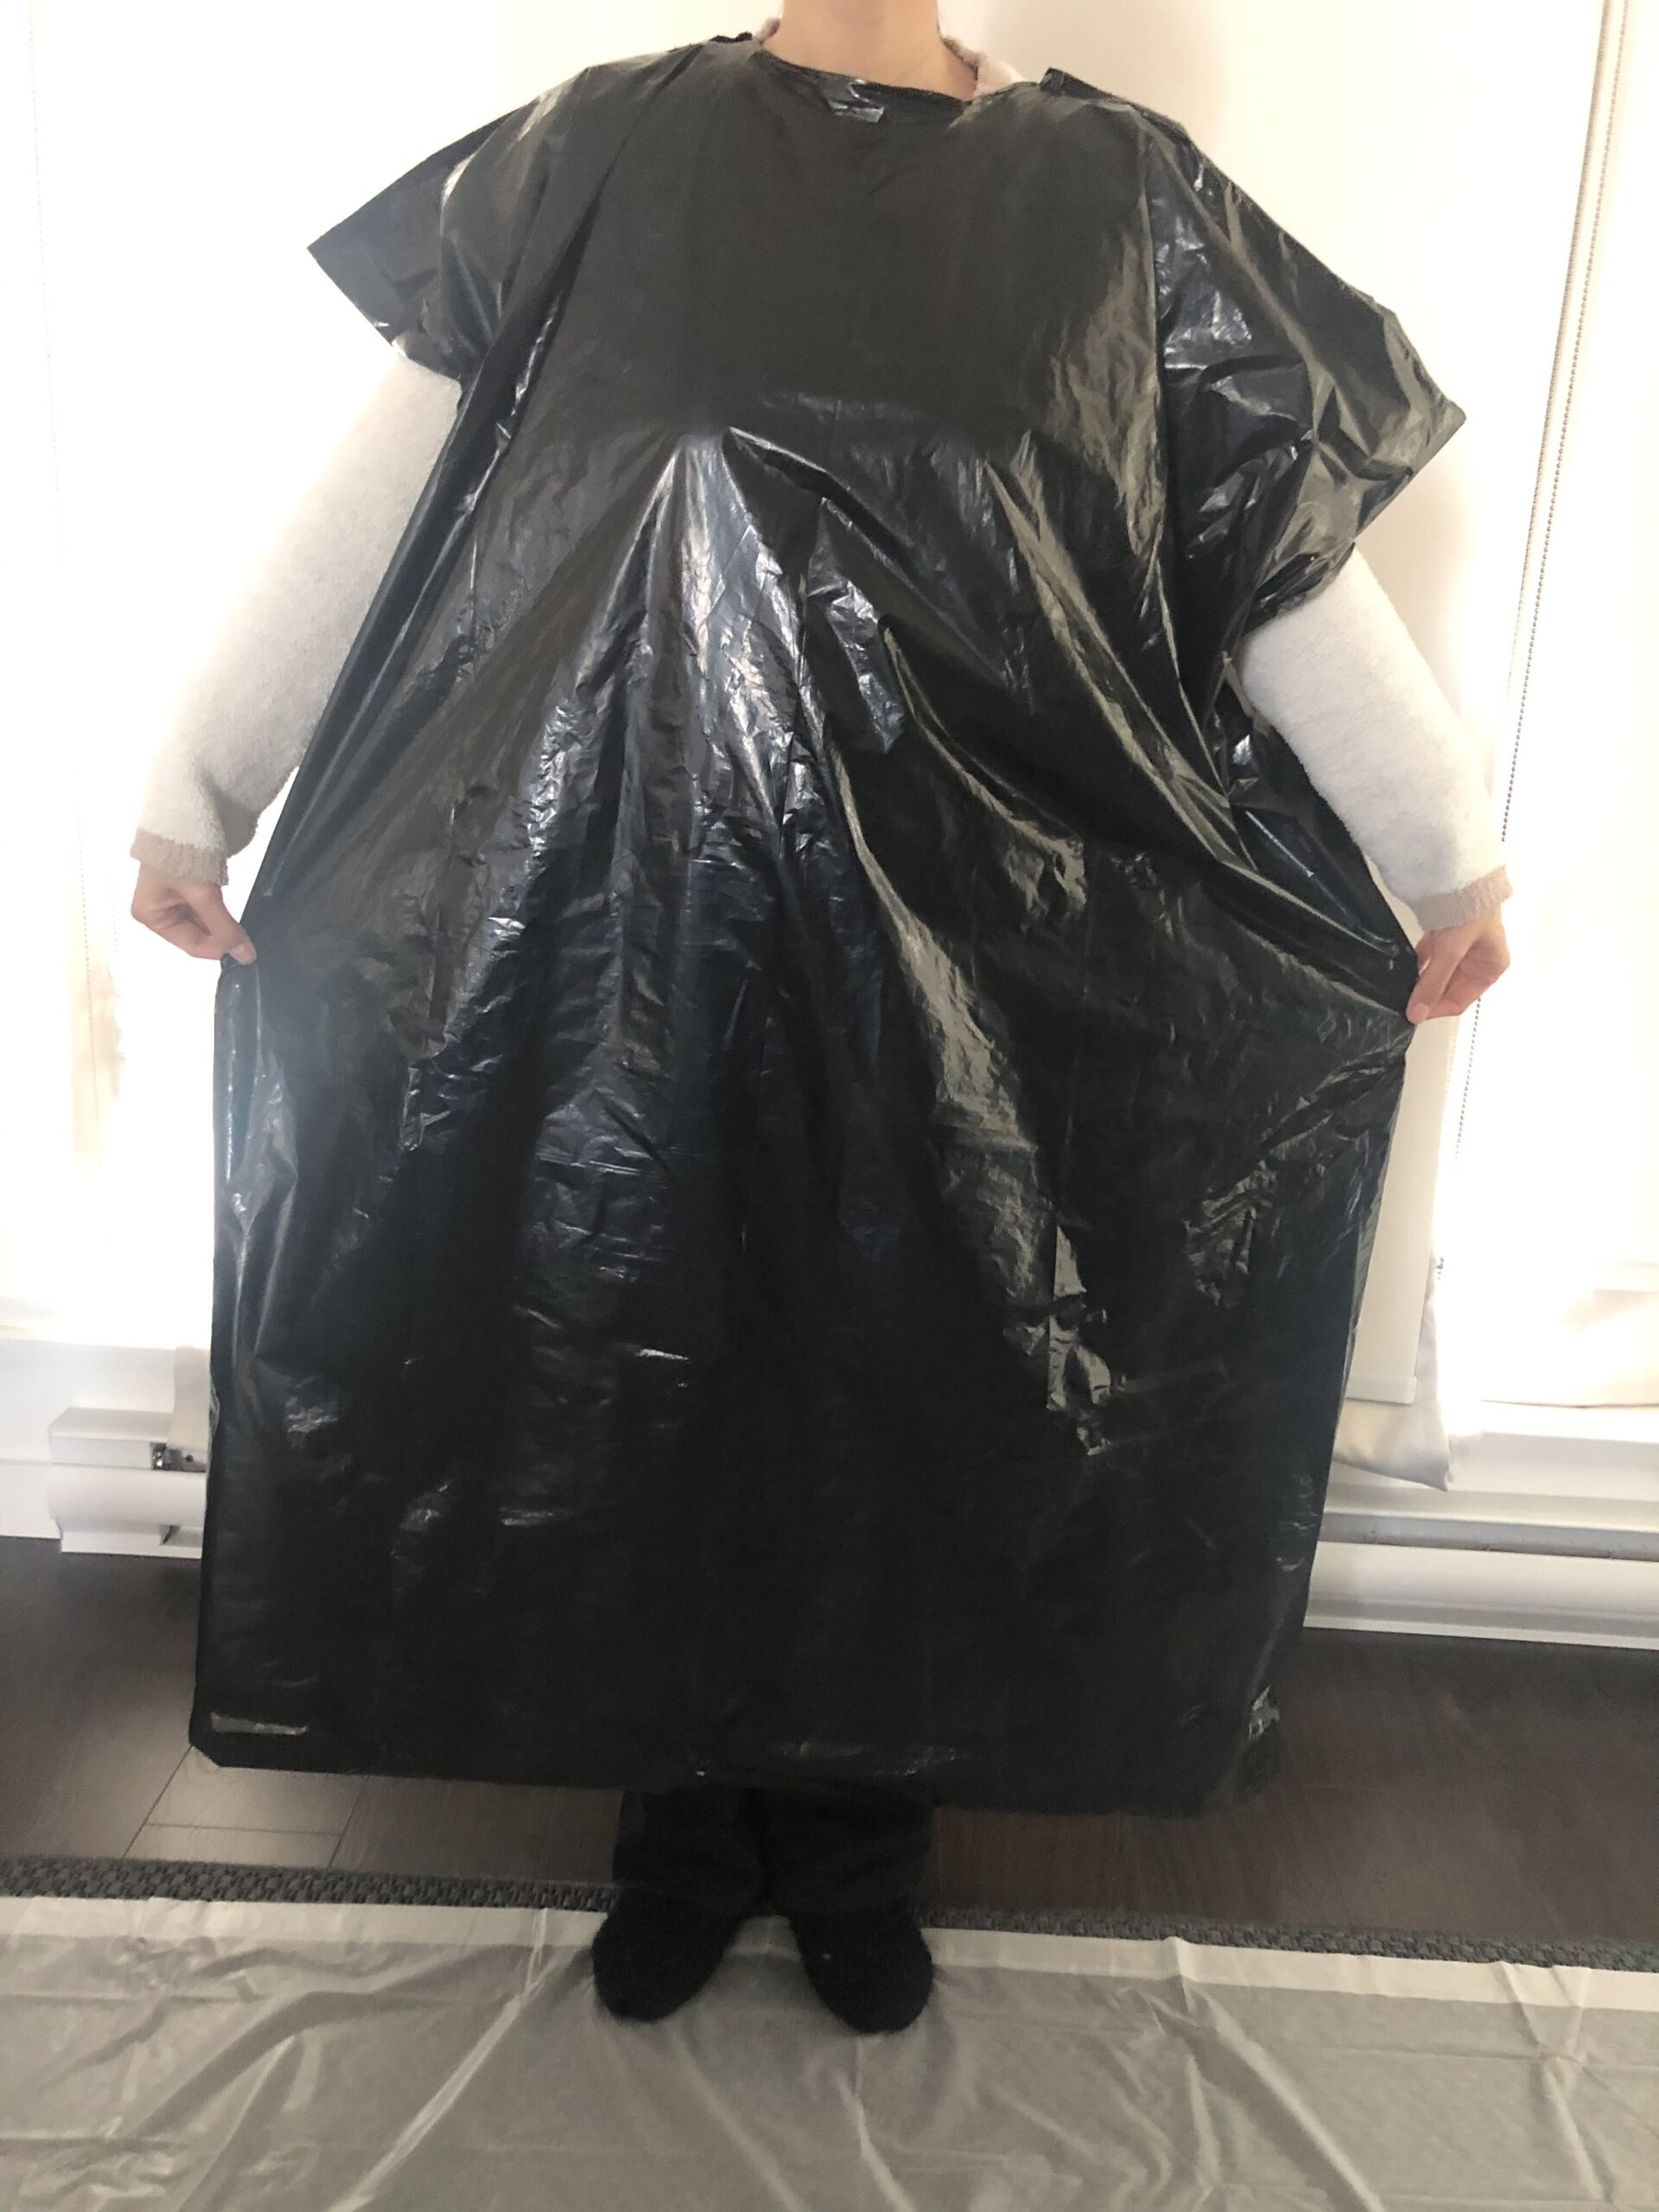 Details more than 80 garbage bag raincoat super hot - esthdonghoadian